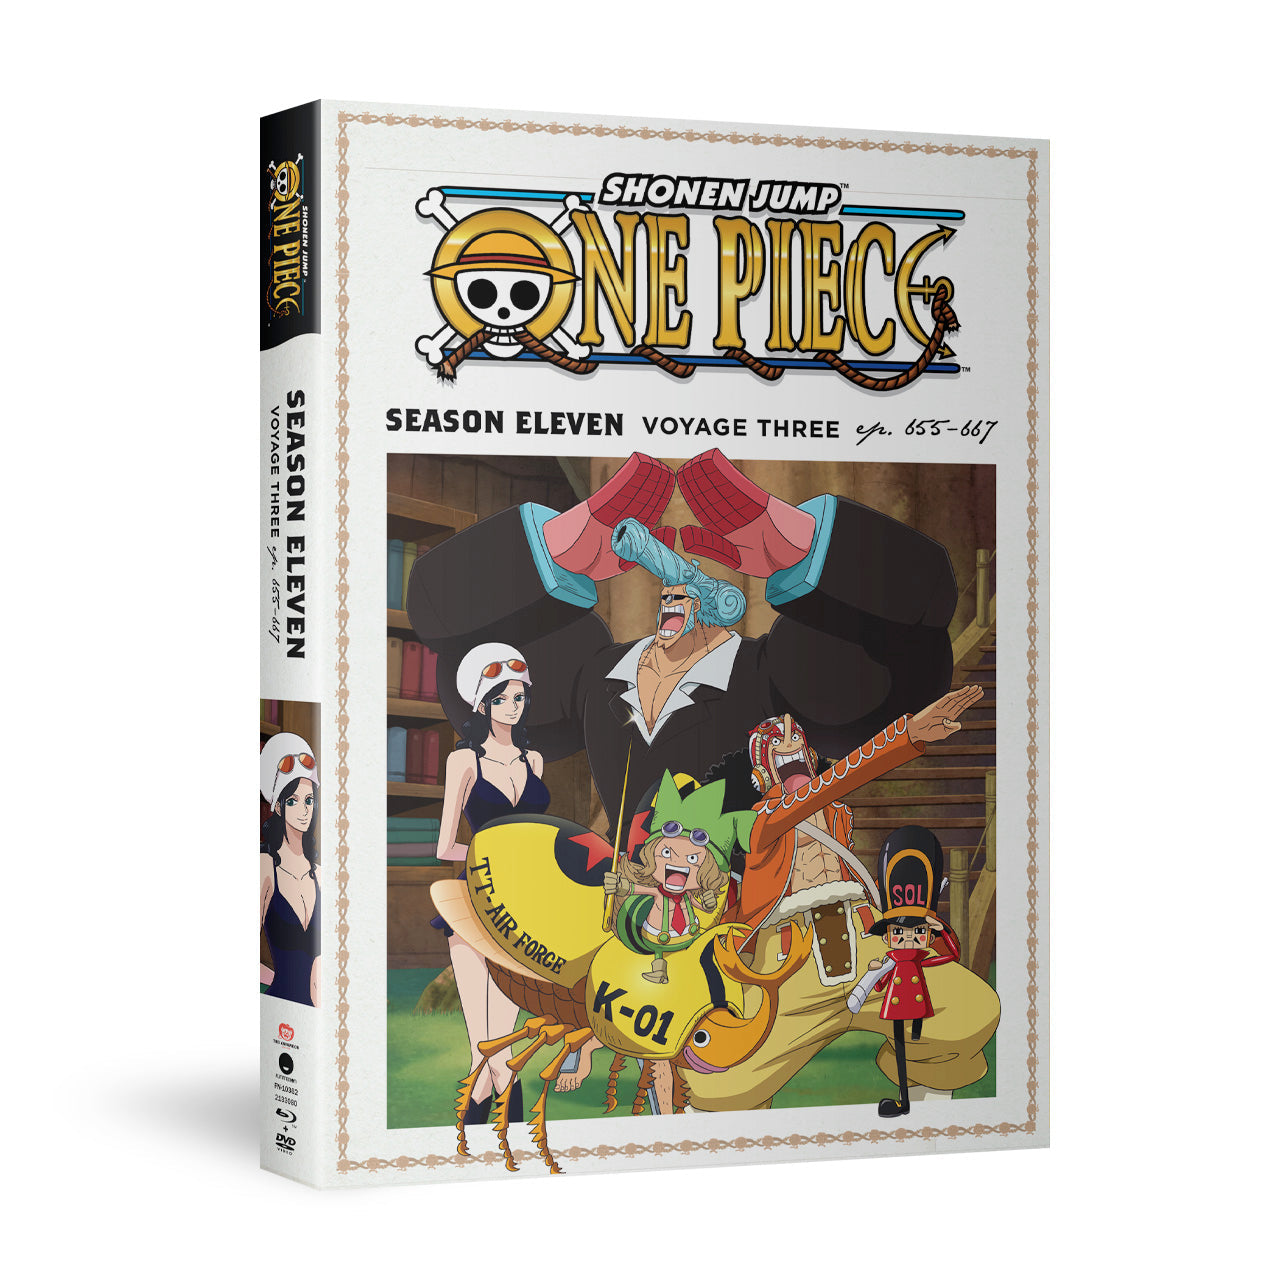 One Piece - Season Eleven Voyage Three - BD/DVD image count 1